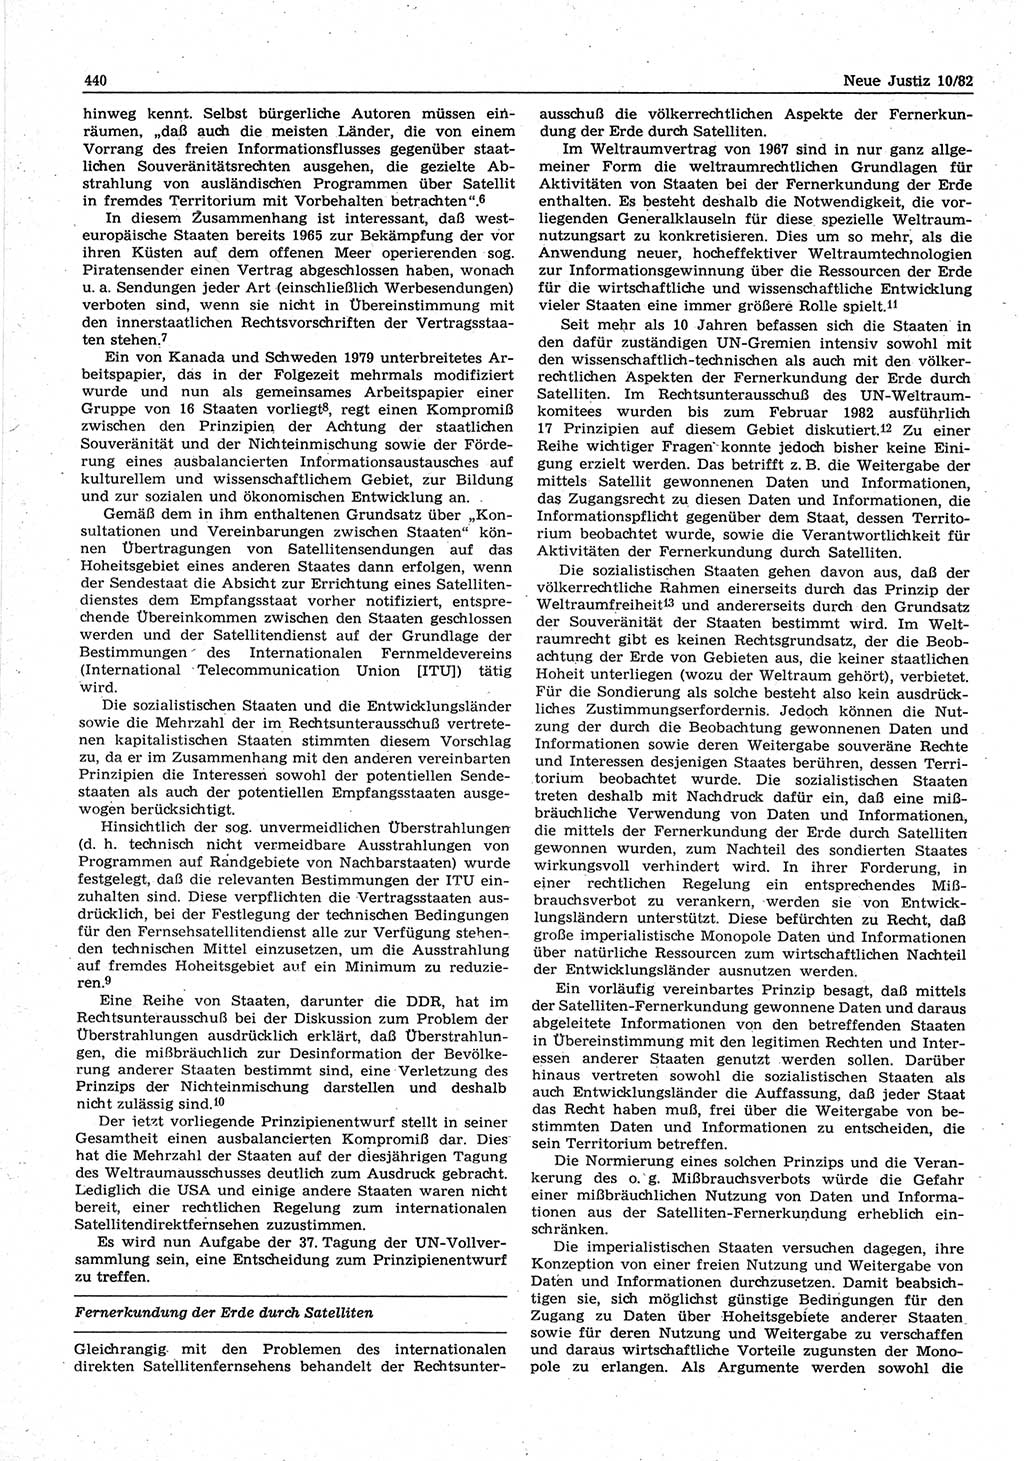 Neue Justiz (NJ), Zeitschrift für sozialistisches Recht und Gesetzlichkeit [Deutsche Demokratische Republik (DDR)], 36. Jahrgang 1982, Seite 440 (NJ DDR 1982, S. 440)